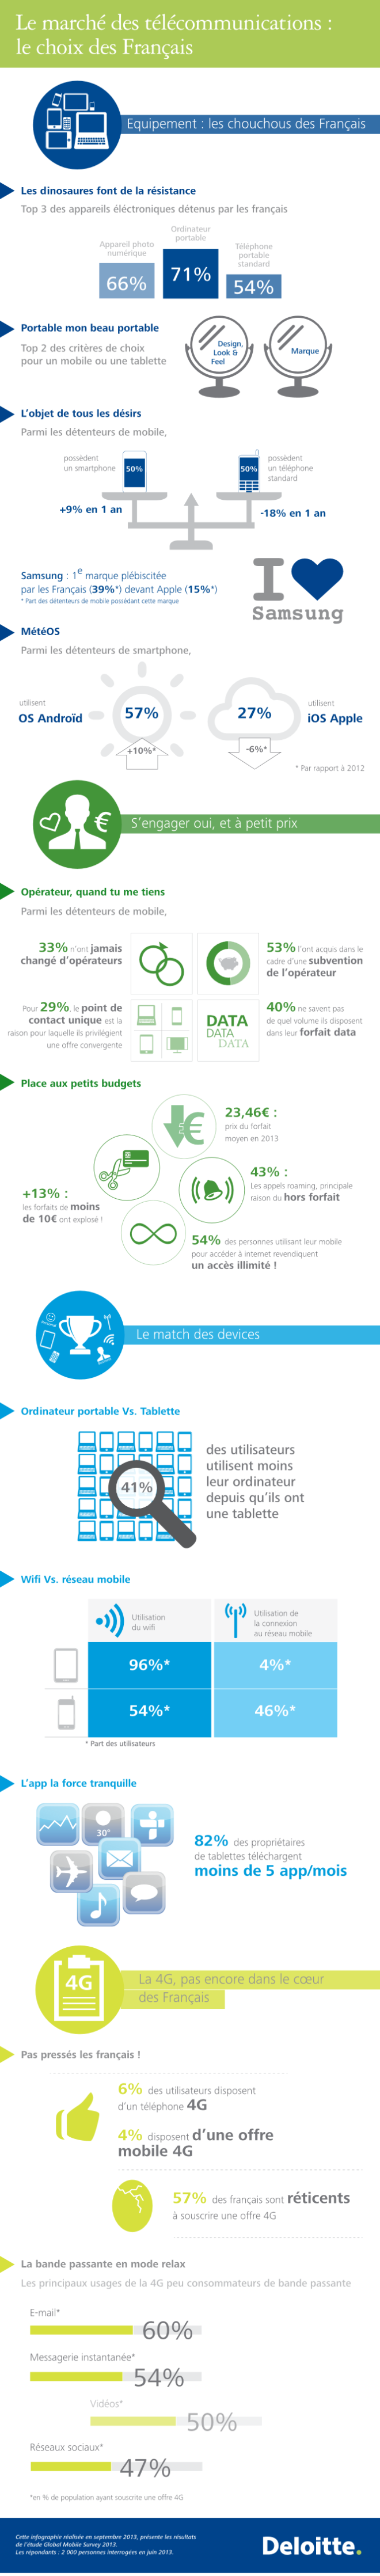 Les Français et les services mobiles en 2013